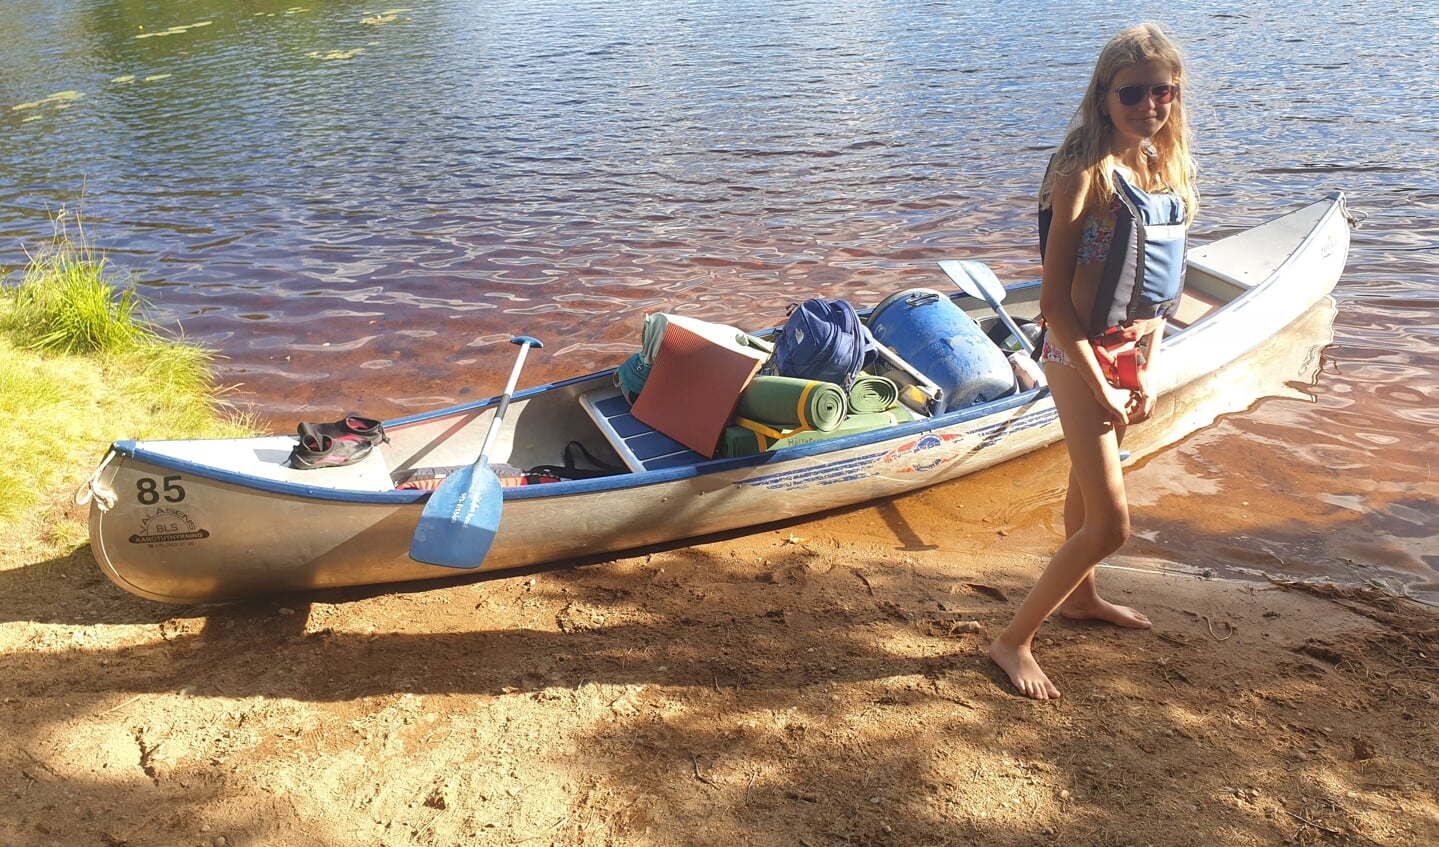 Met volledige bepakking elke ochtend weer op pad in de kano tijdens onze vakantie in Zweden.